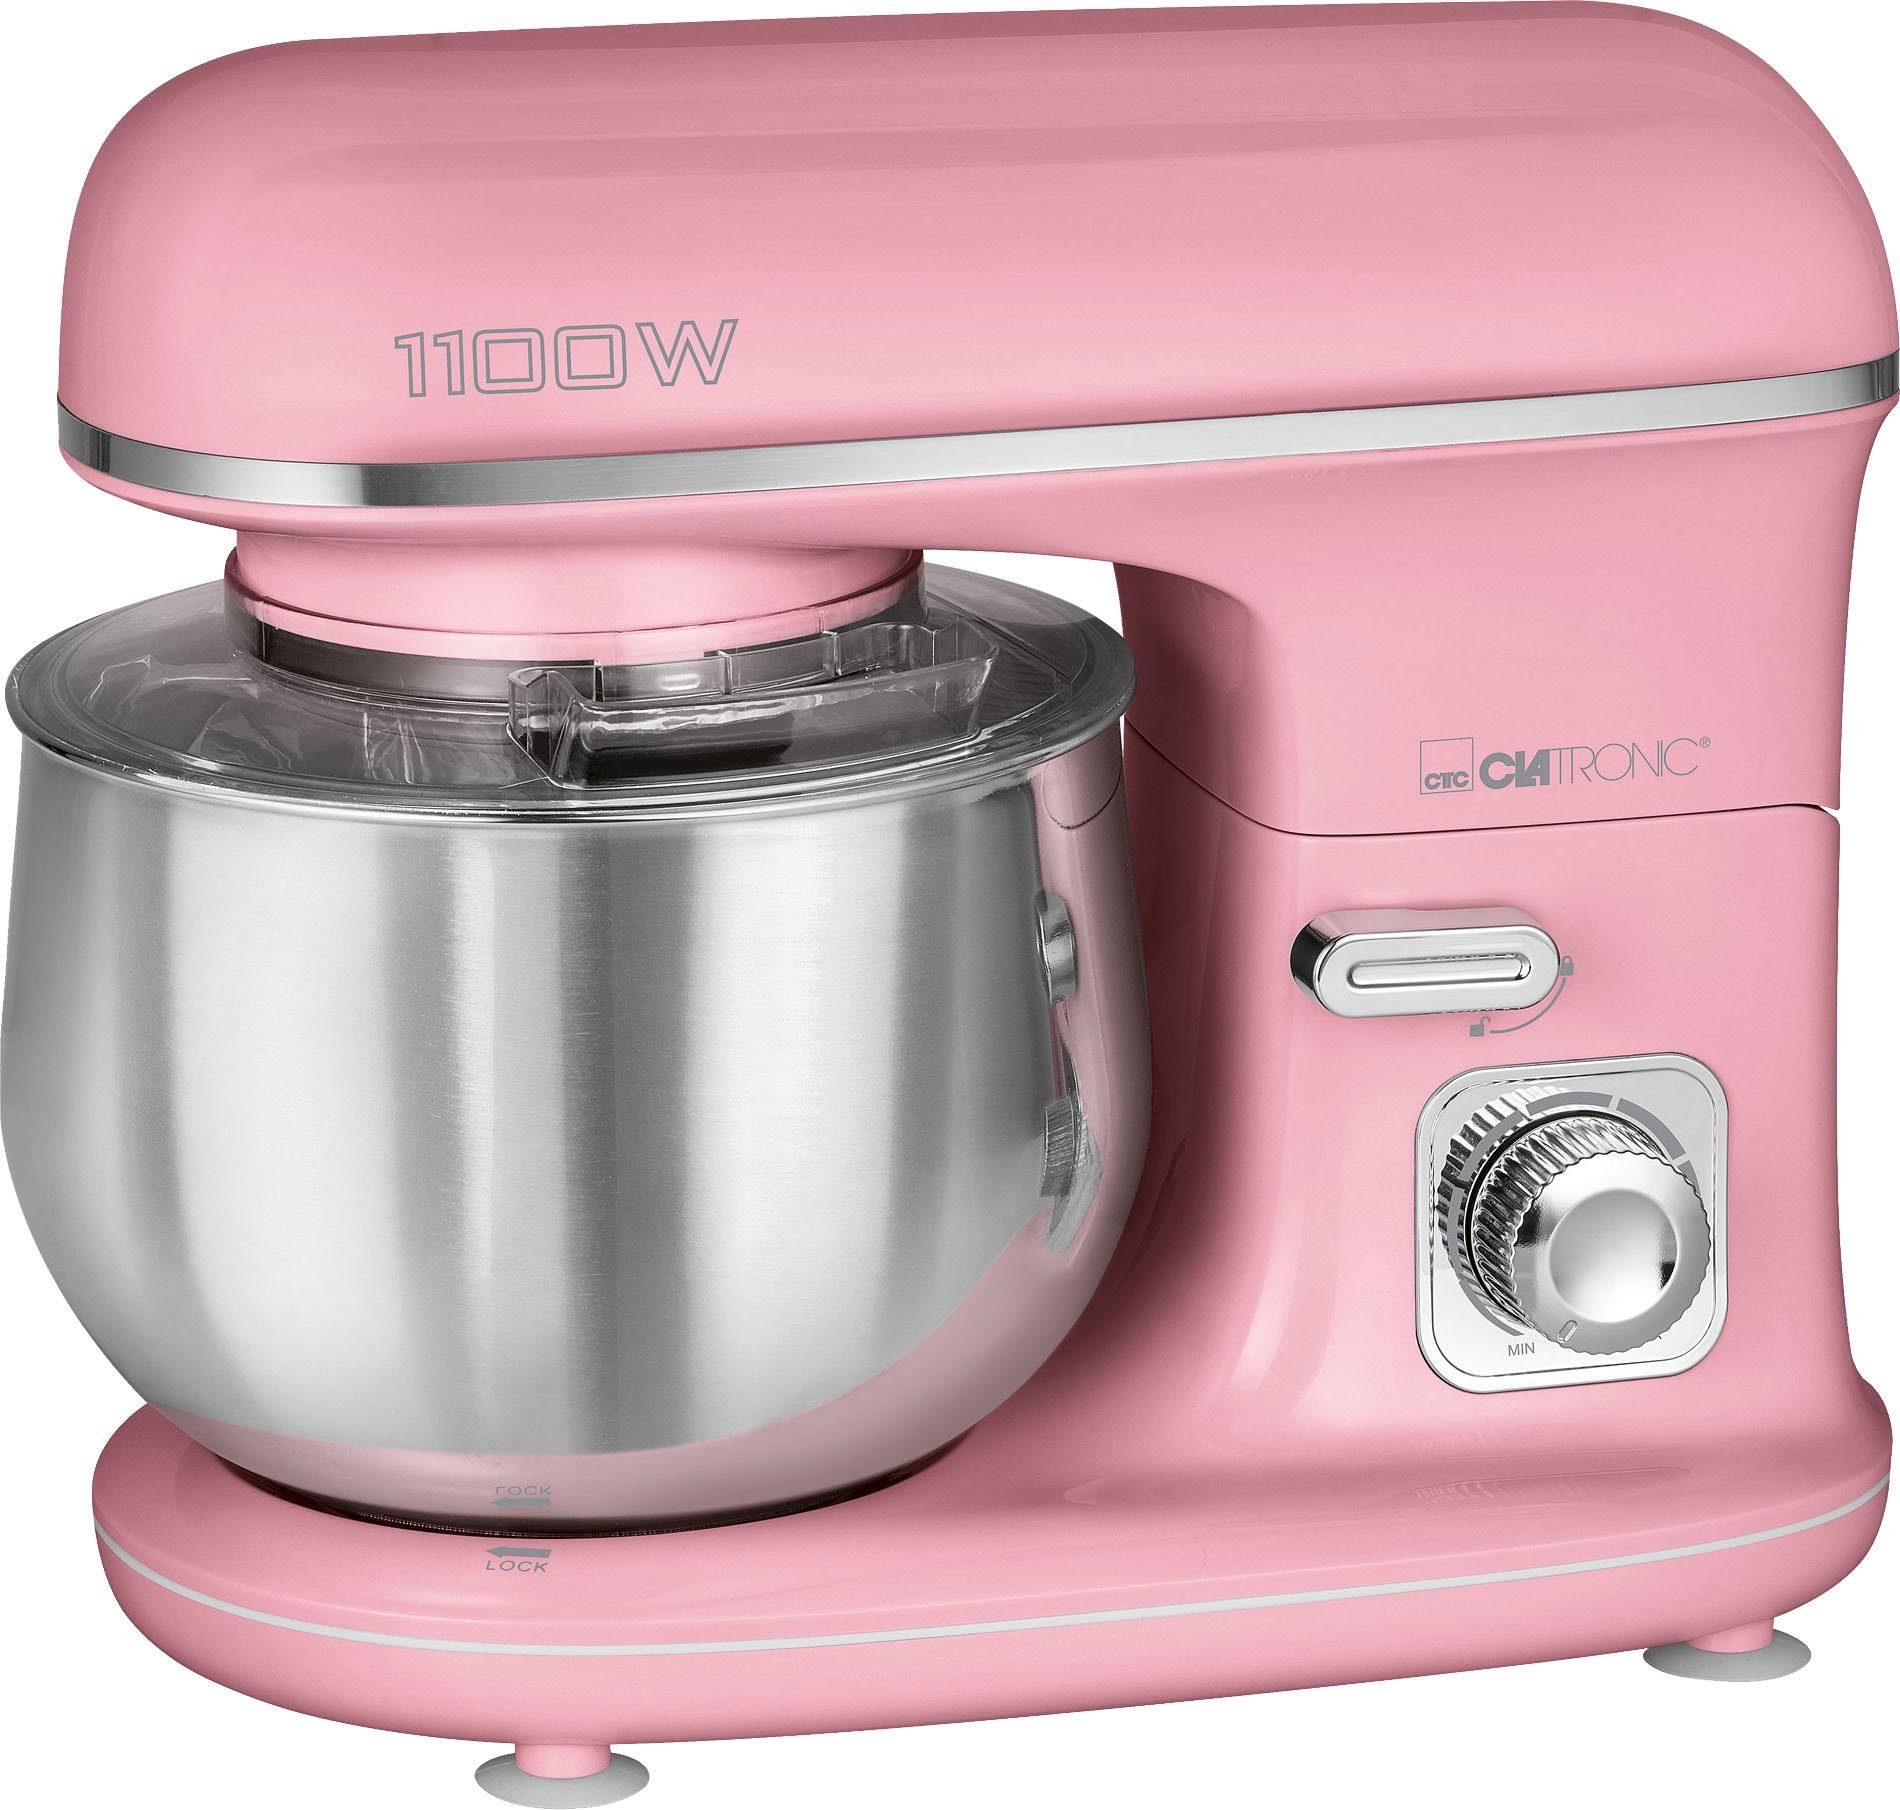 CLATRONIC Küchenmaschine KM 3711 pink, 1100 W, 5 l Schüssel online kaufen |  OTTO